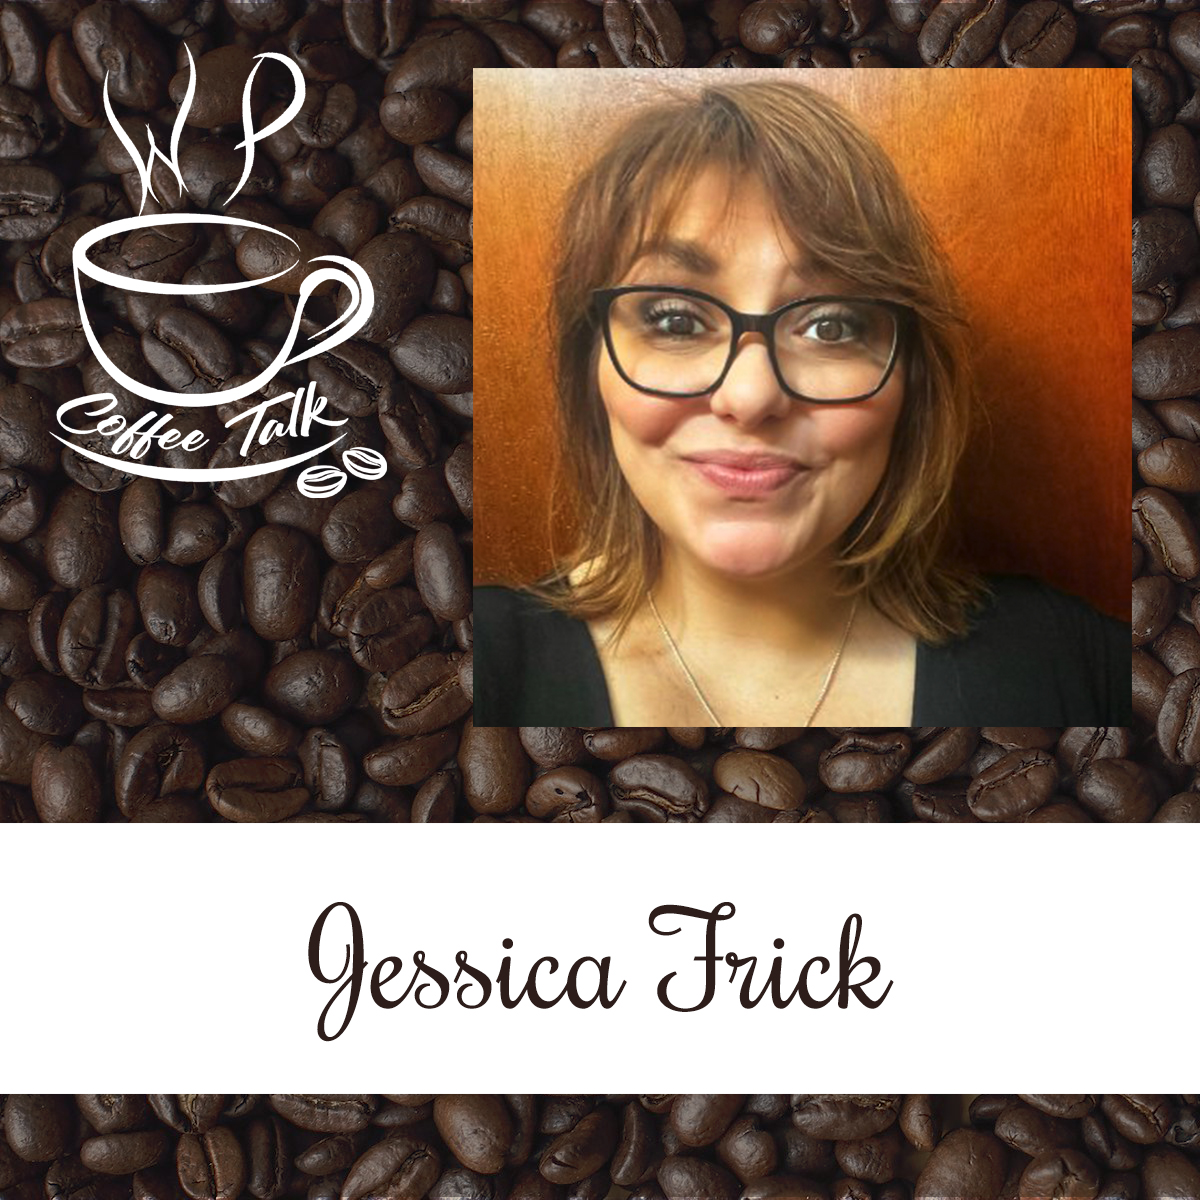 WPCoffeeTalk: Jessica Frick